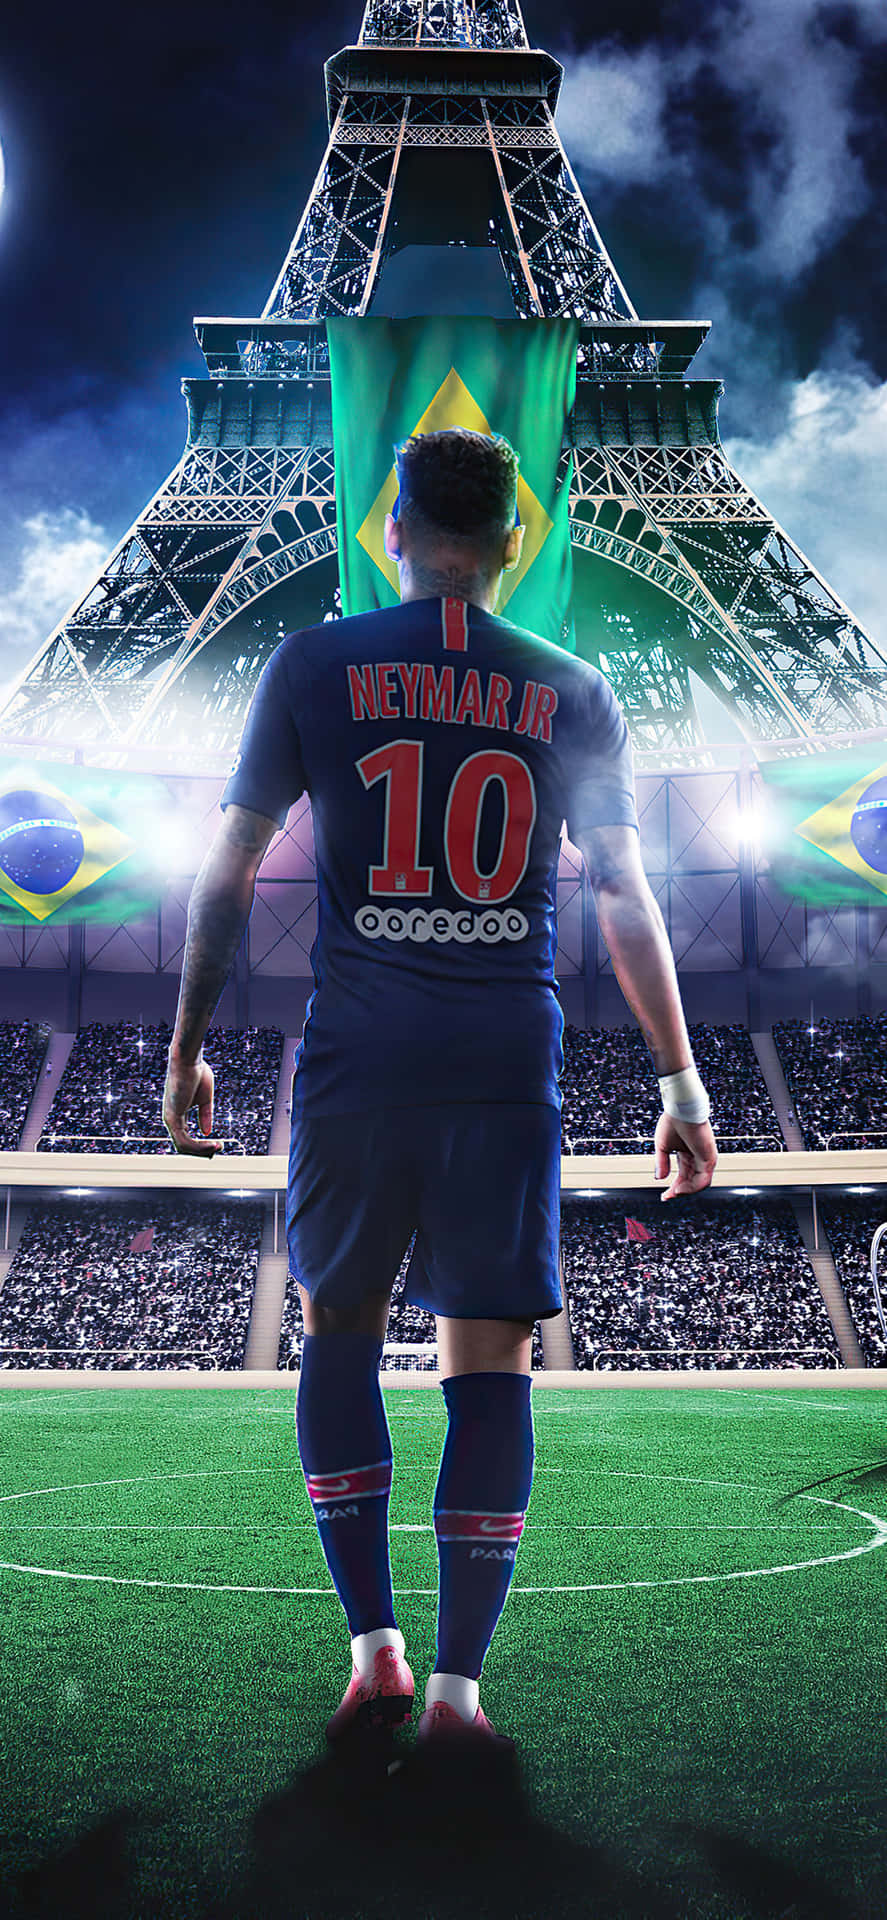 Bạn đang tìm kiếm một hình nền Neymar độc đáo cho iPhone của mình? Hãy xem các tùy chọn tuyệt đẹp và đầy màu sắc trong bộ sưu tập hình nền Ngôi sao Barca này.